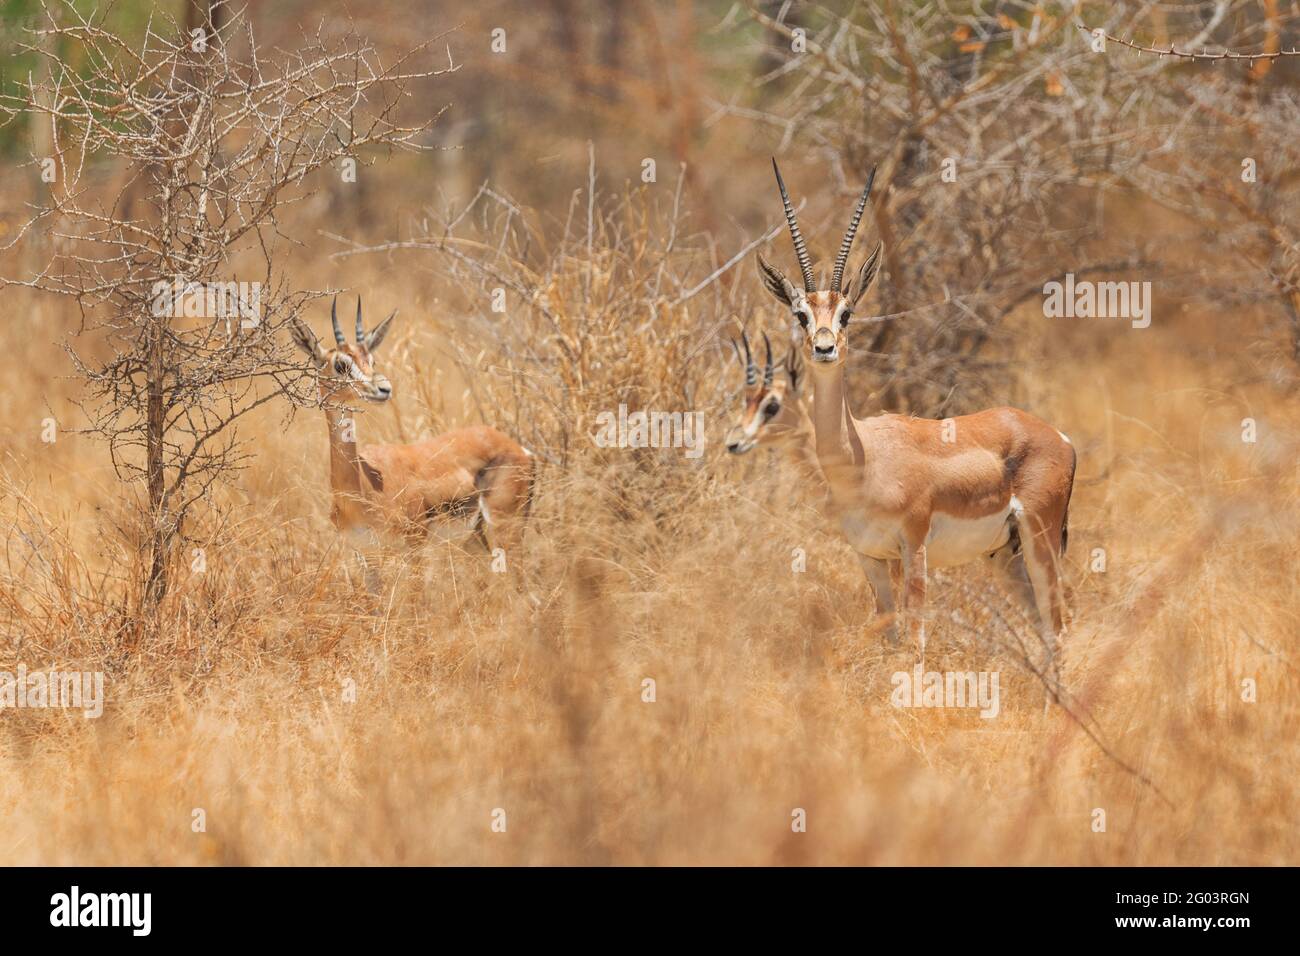 Grant's Gazelle - Nanger granti, kleine schnelle Antilope aus afrikanischer Savanne, Bale Mountains, Etiopia. Stockfoto